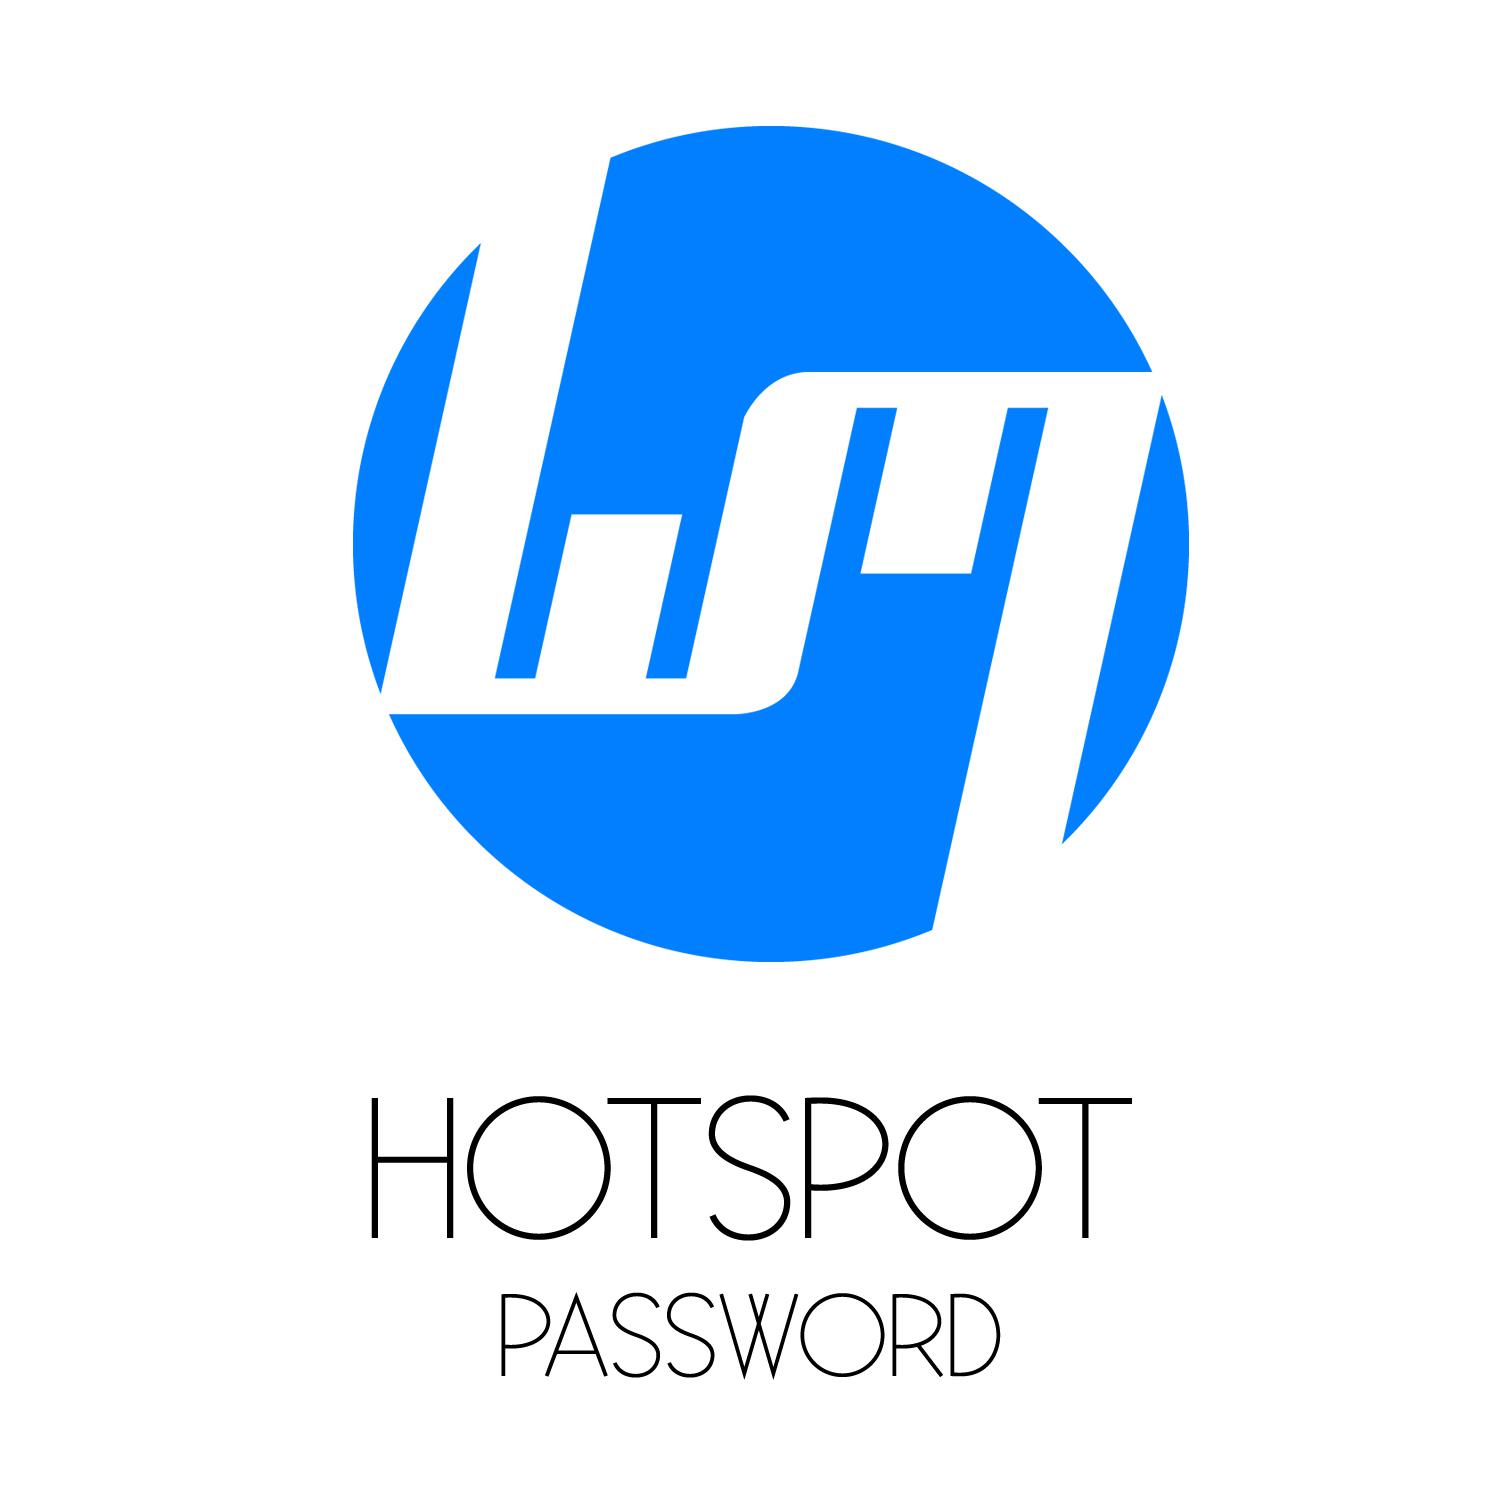 HOTSPOT - Password